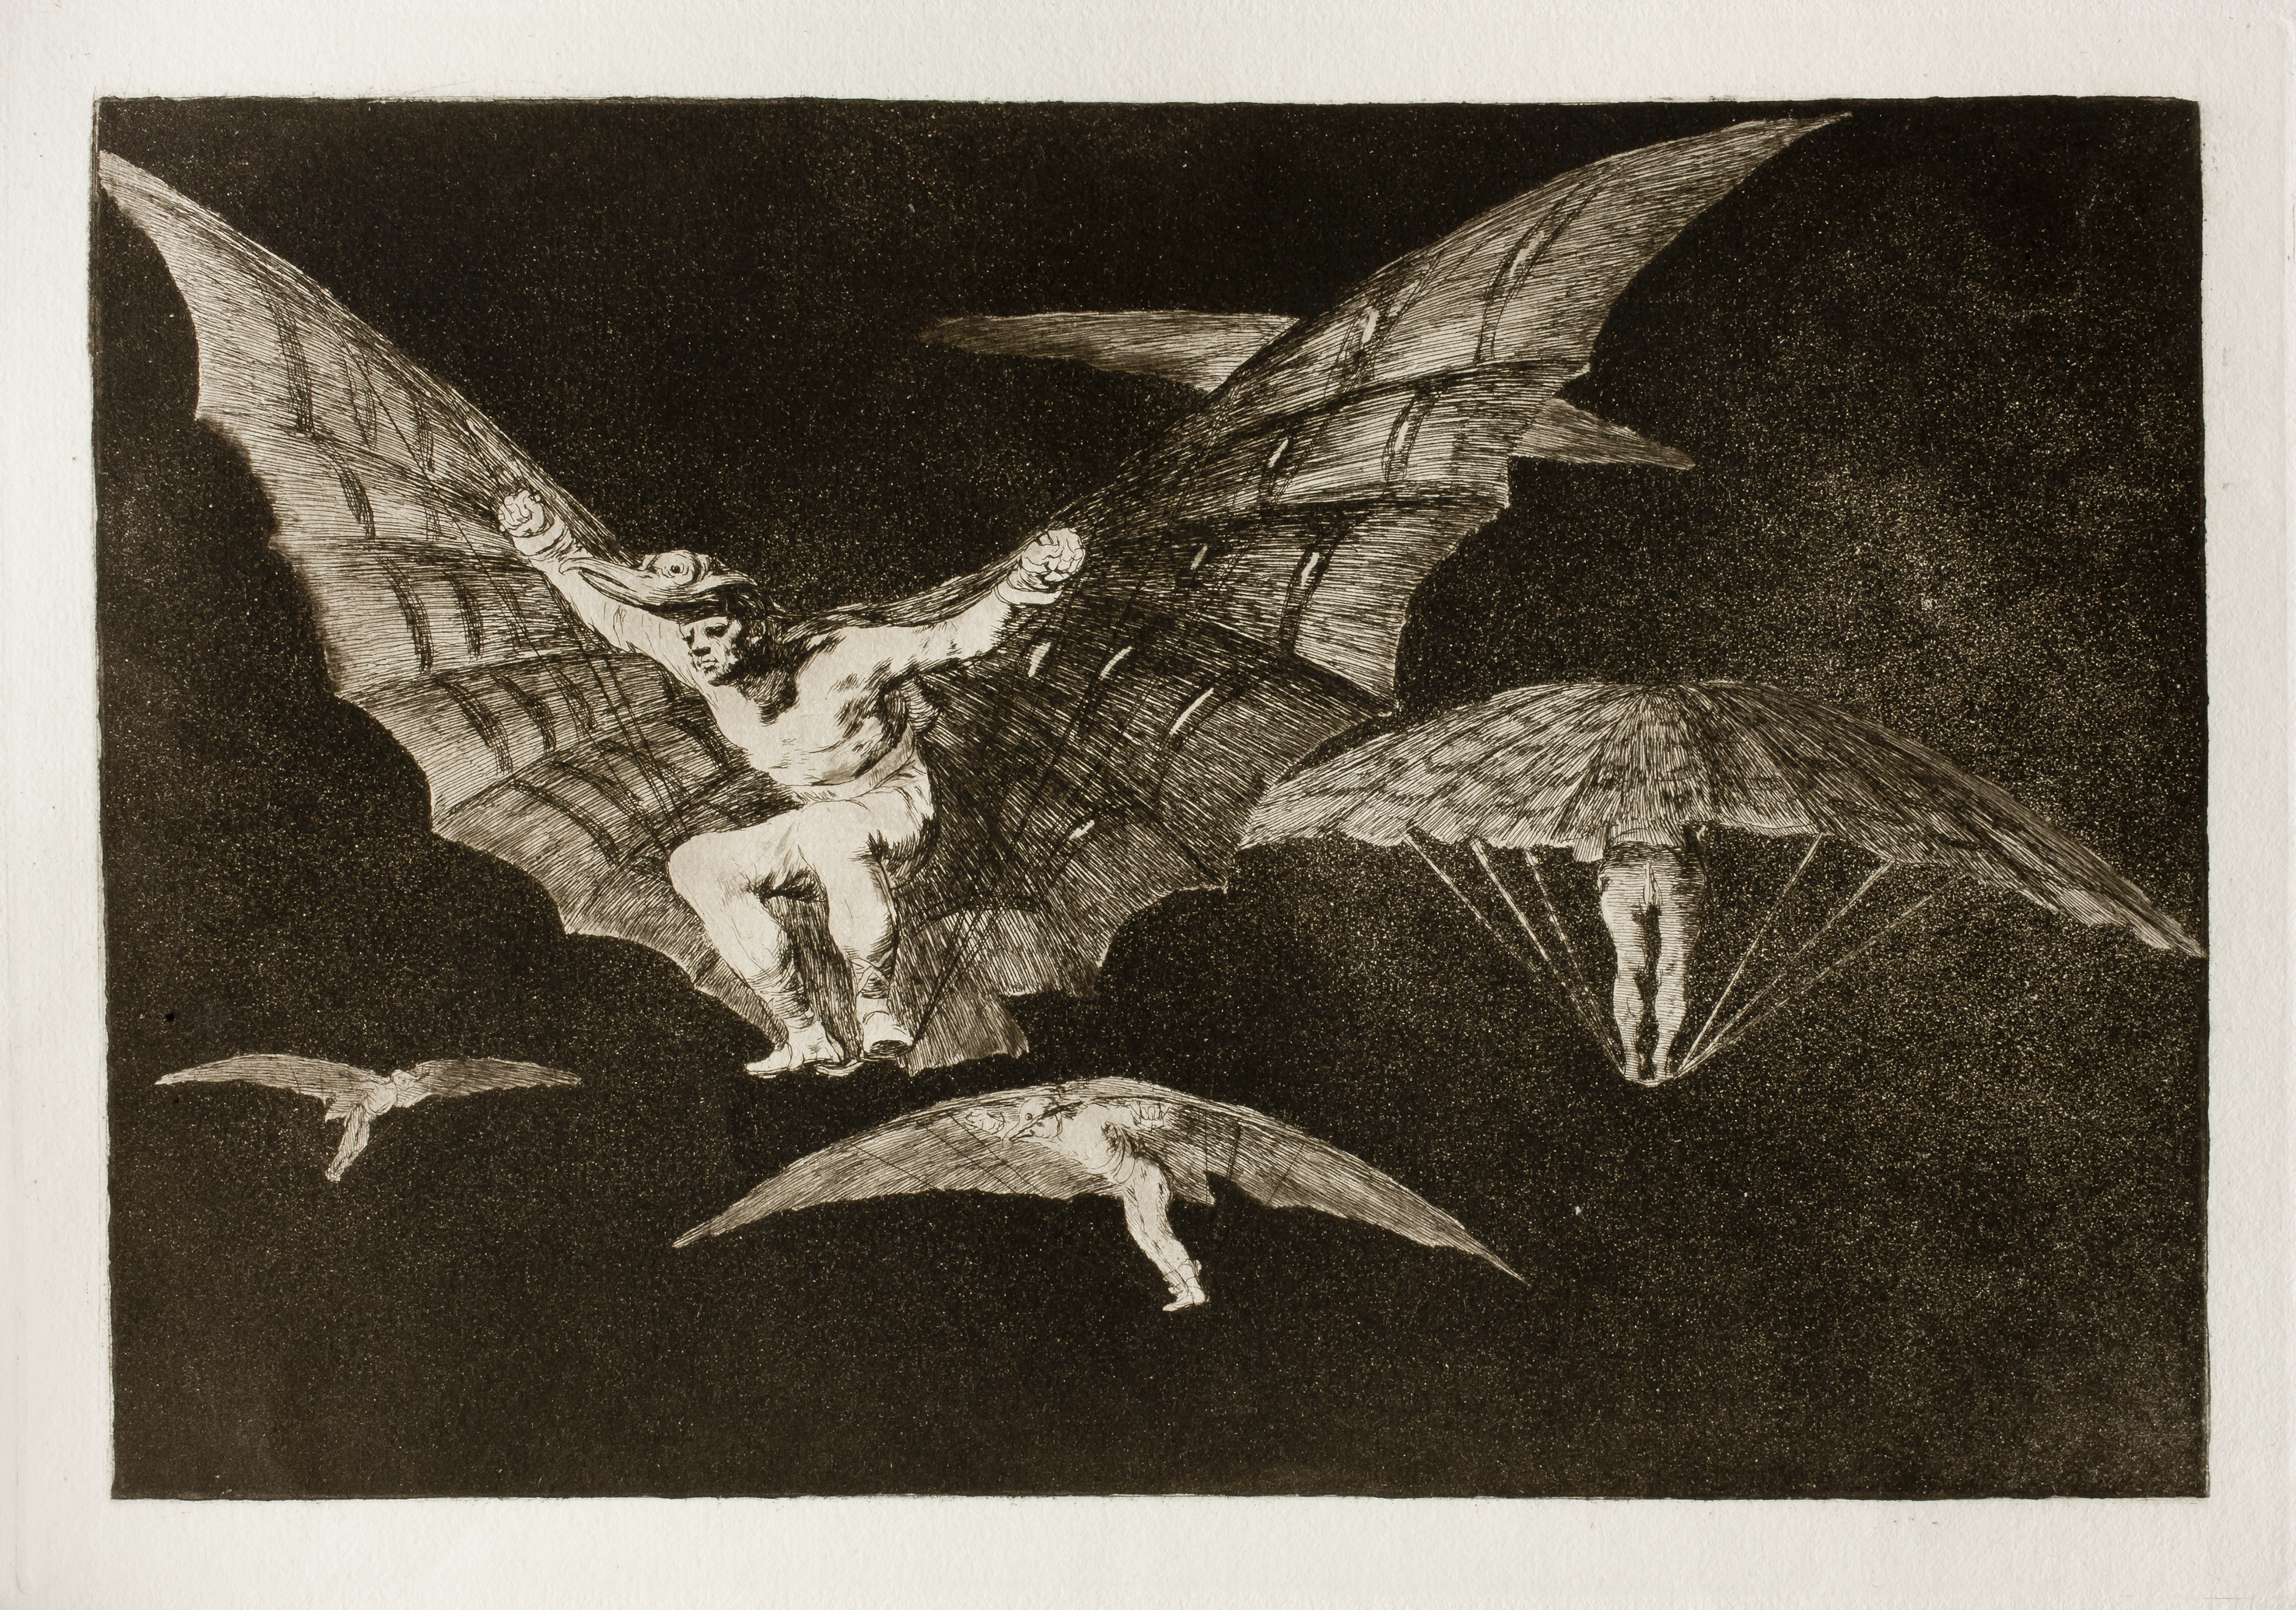 Um Modo de Voar by Francisco Goya - 1823 - 24.7 x 35.9 cm coleção privada